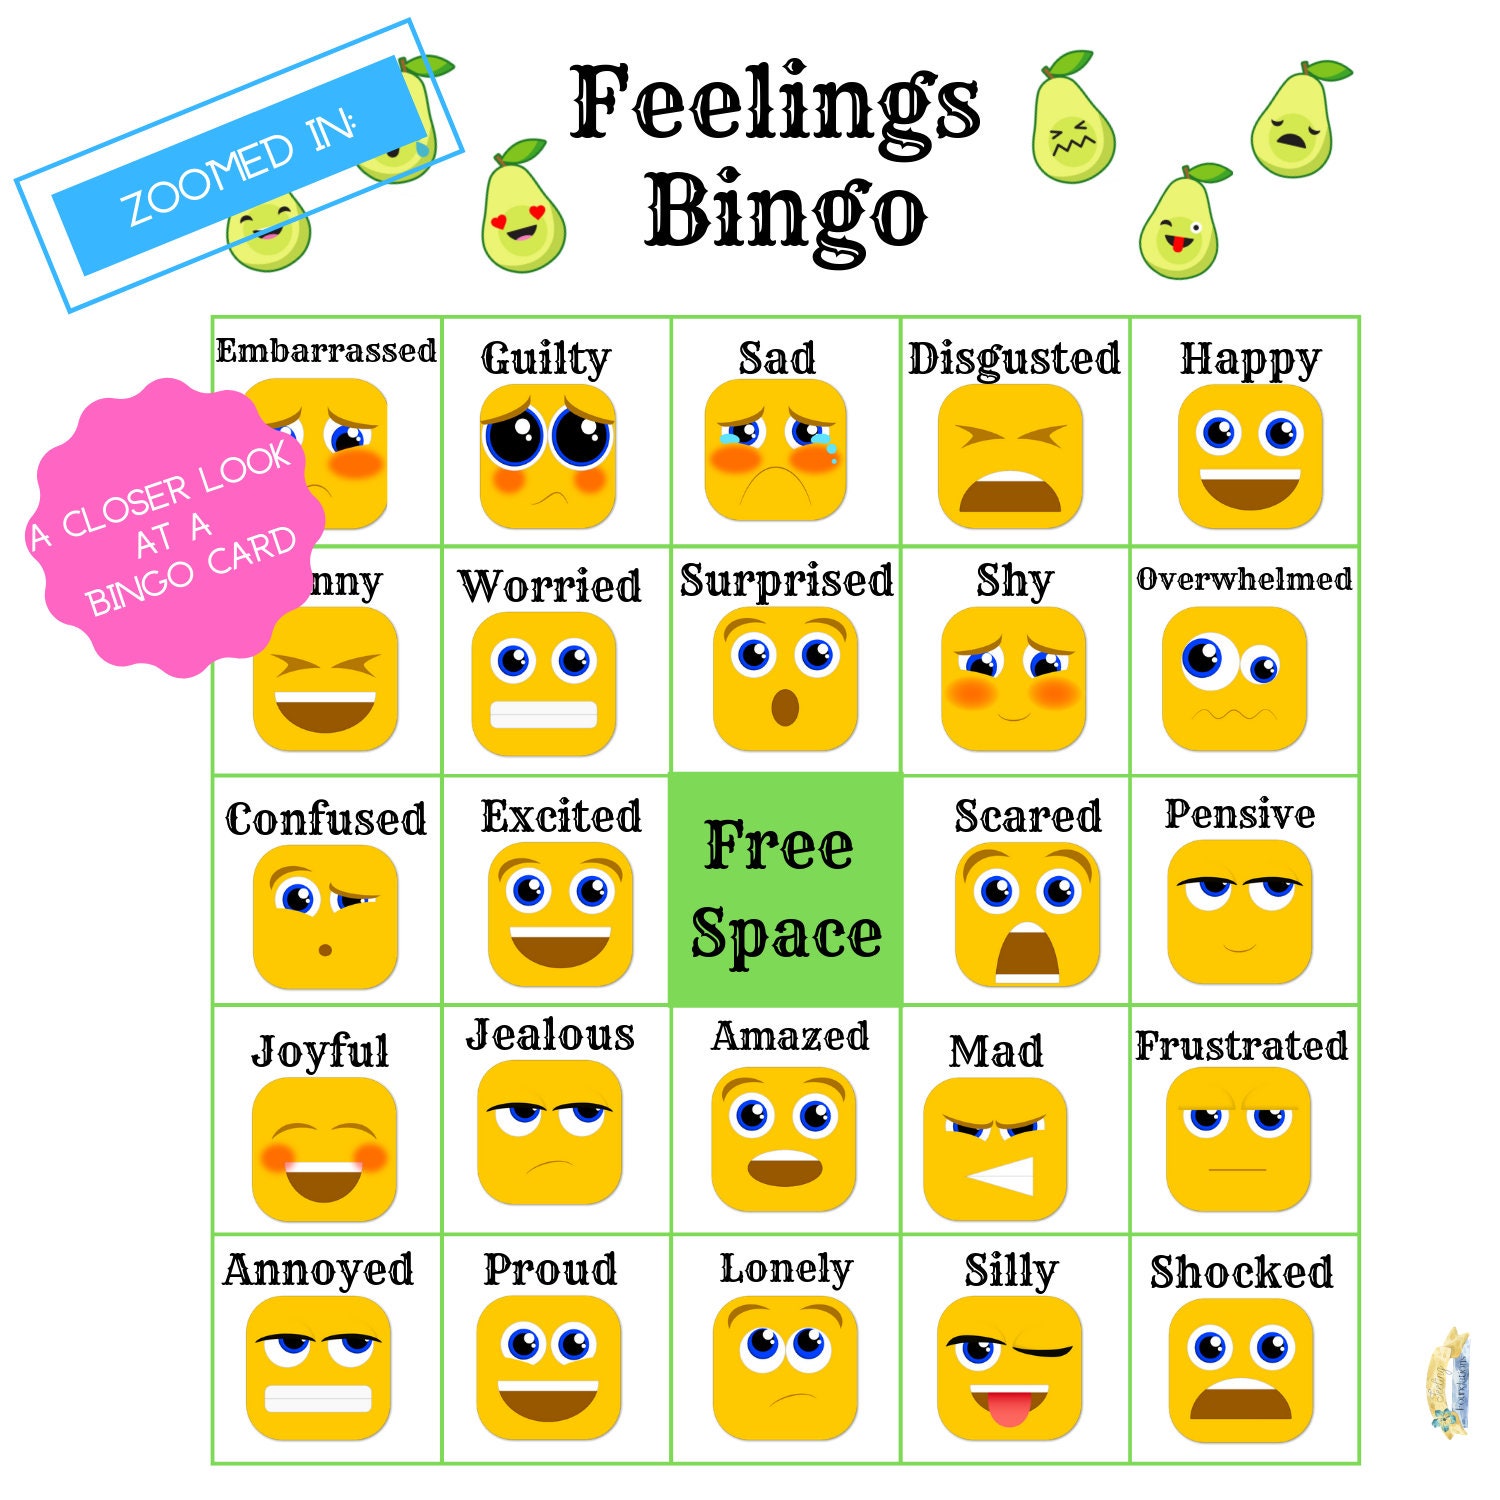 Emociones Instantáneas en Bingo